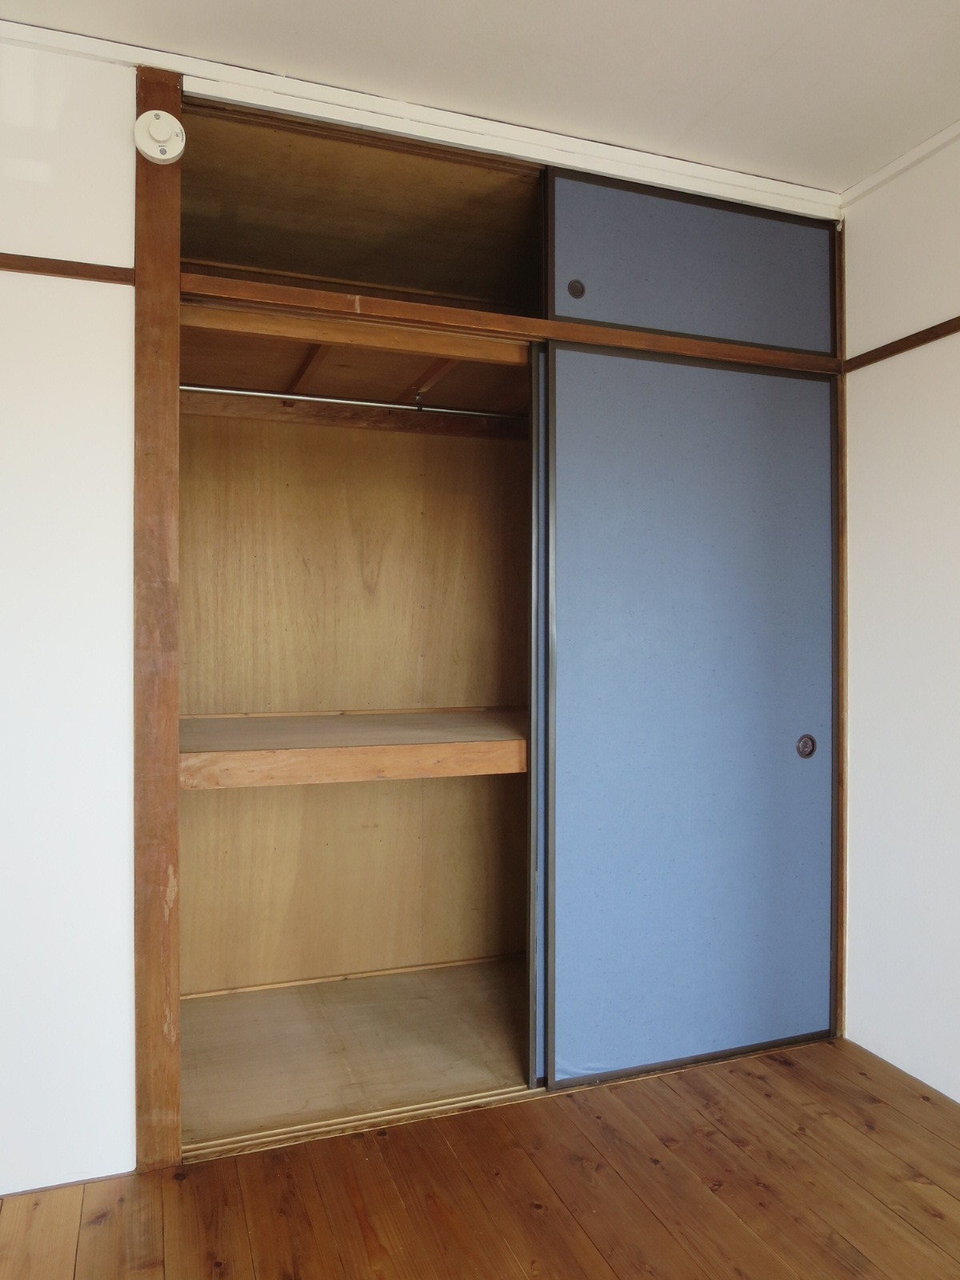 もともとは昭和に建てられたお部屋ですが、その分収納は元が押入れなのでとっても広く、使い勝手がよさそうです。